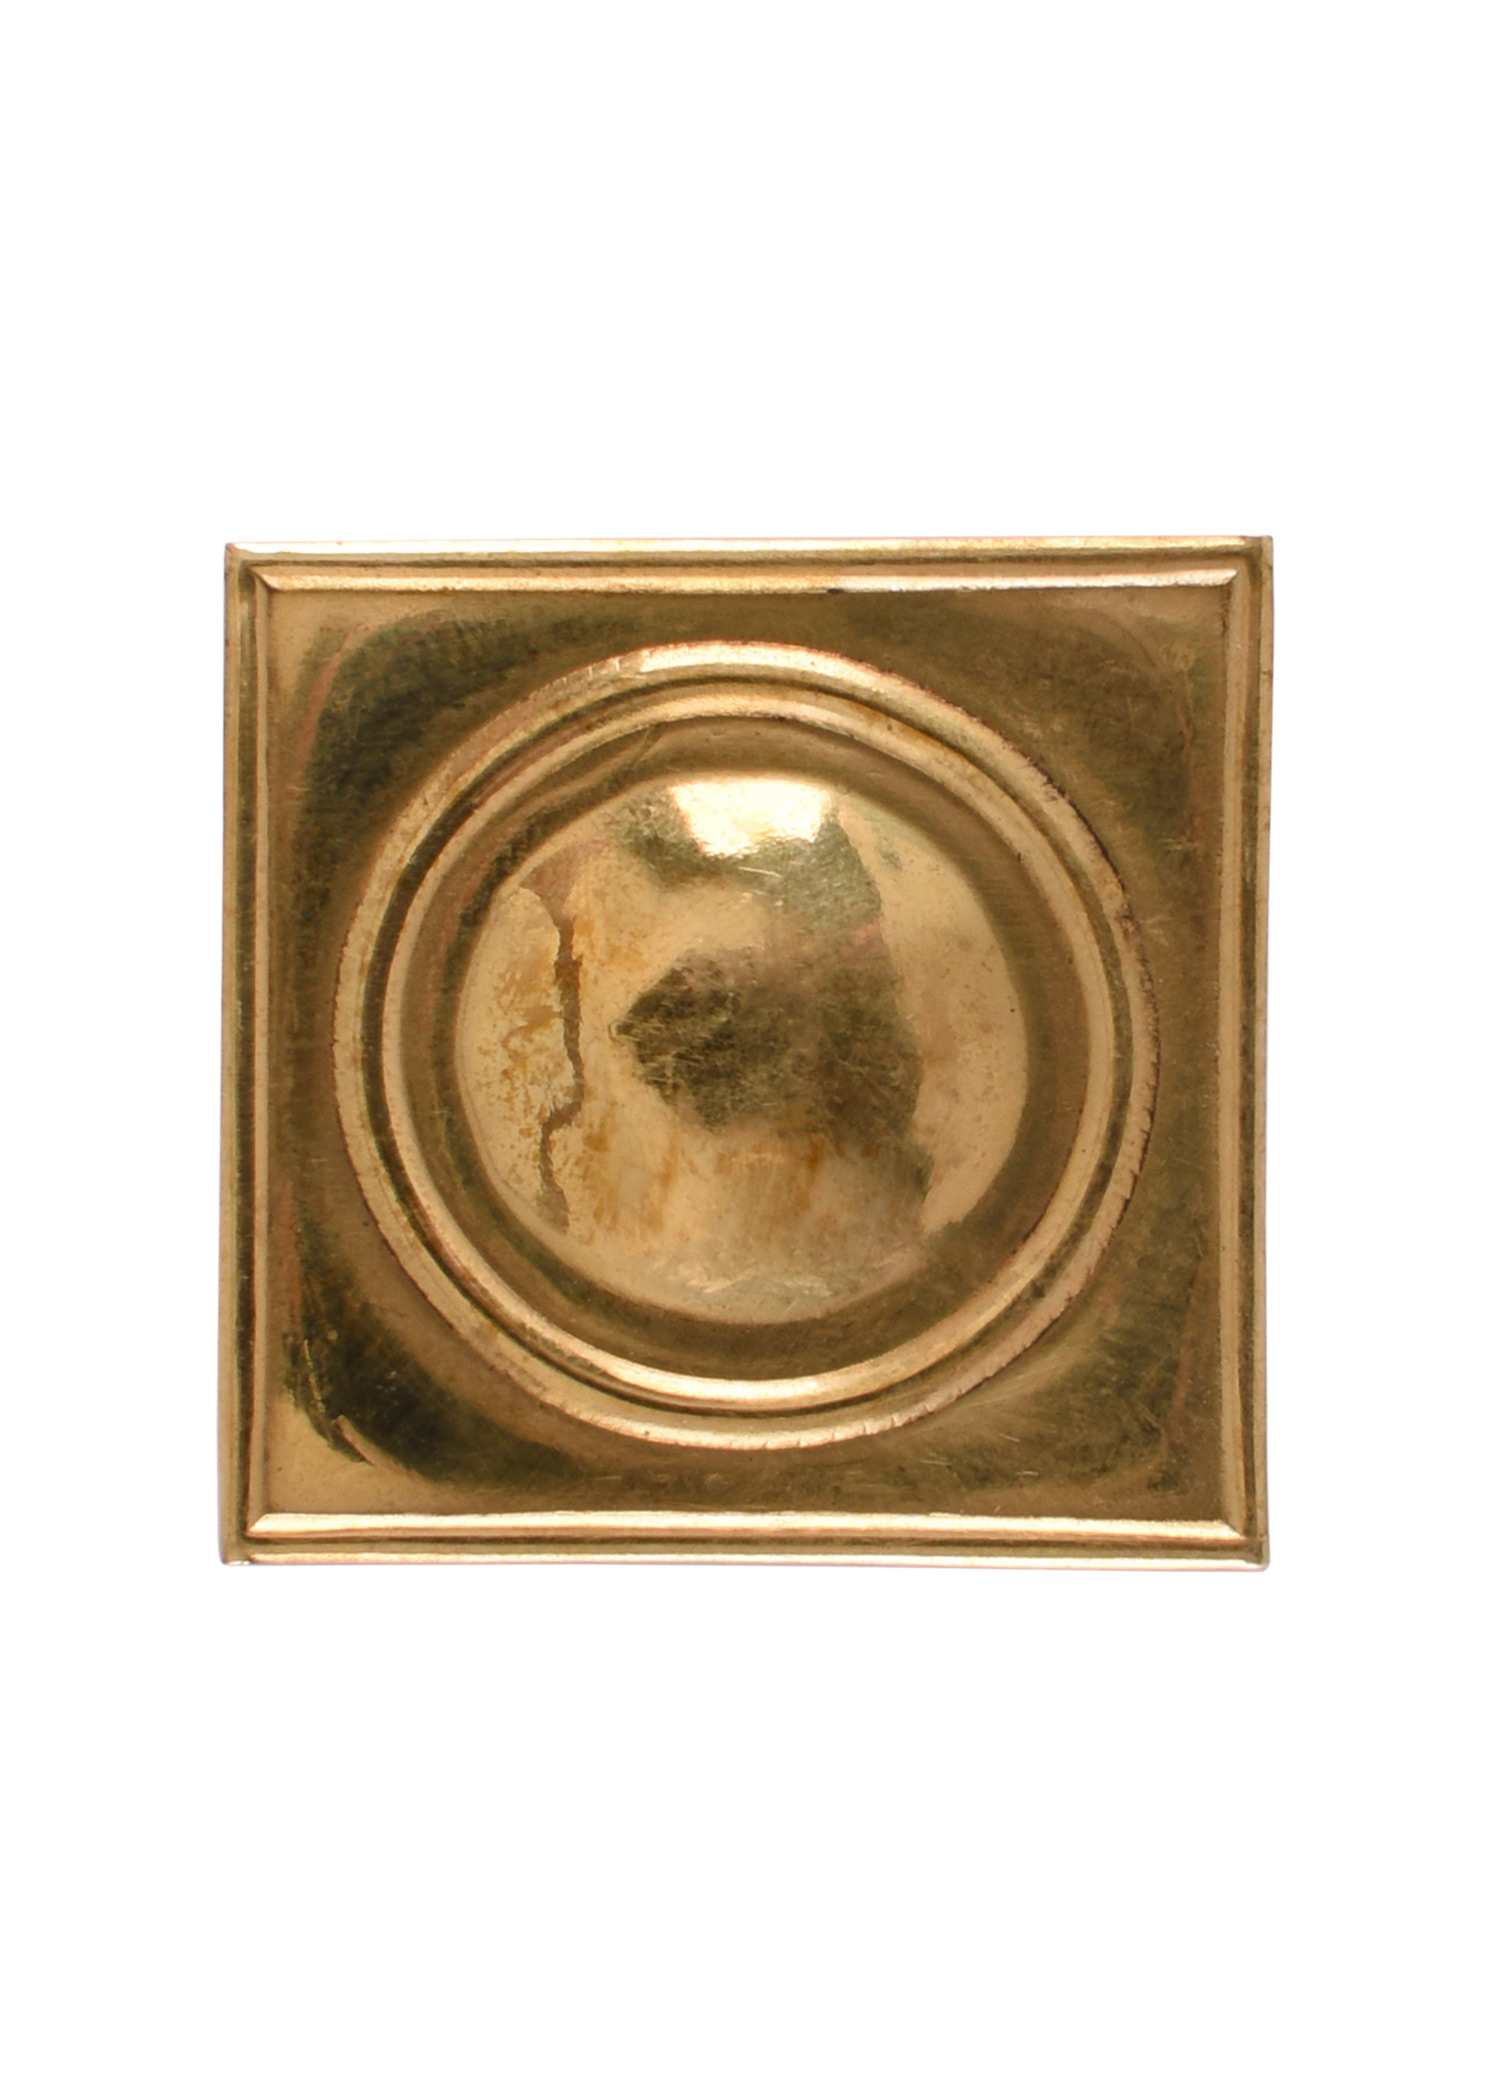 Römischer Gürtelbeschlag aus Messing, 3 x 3 cm